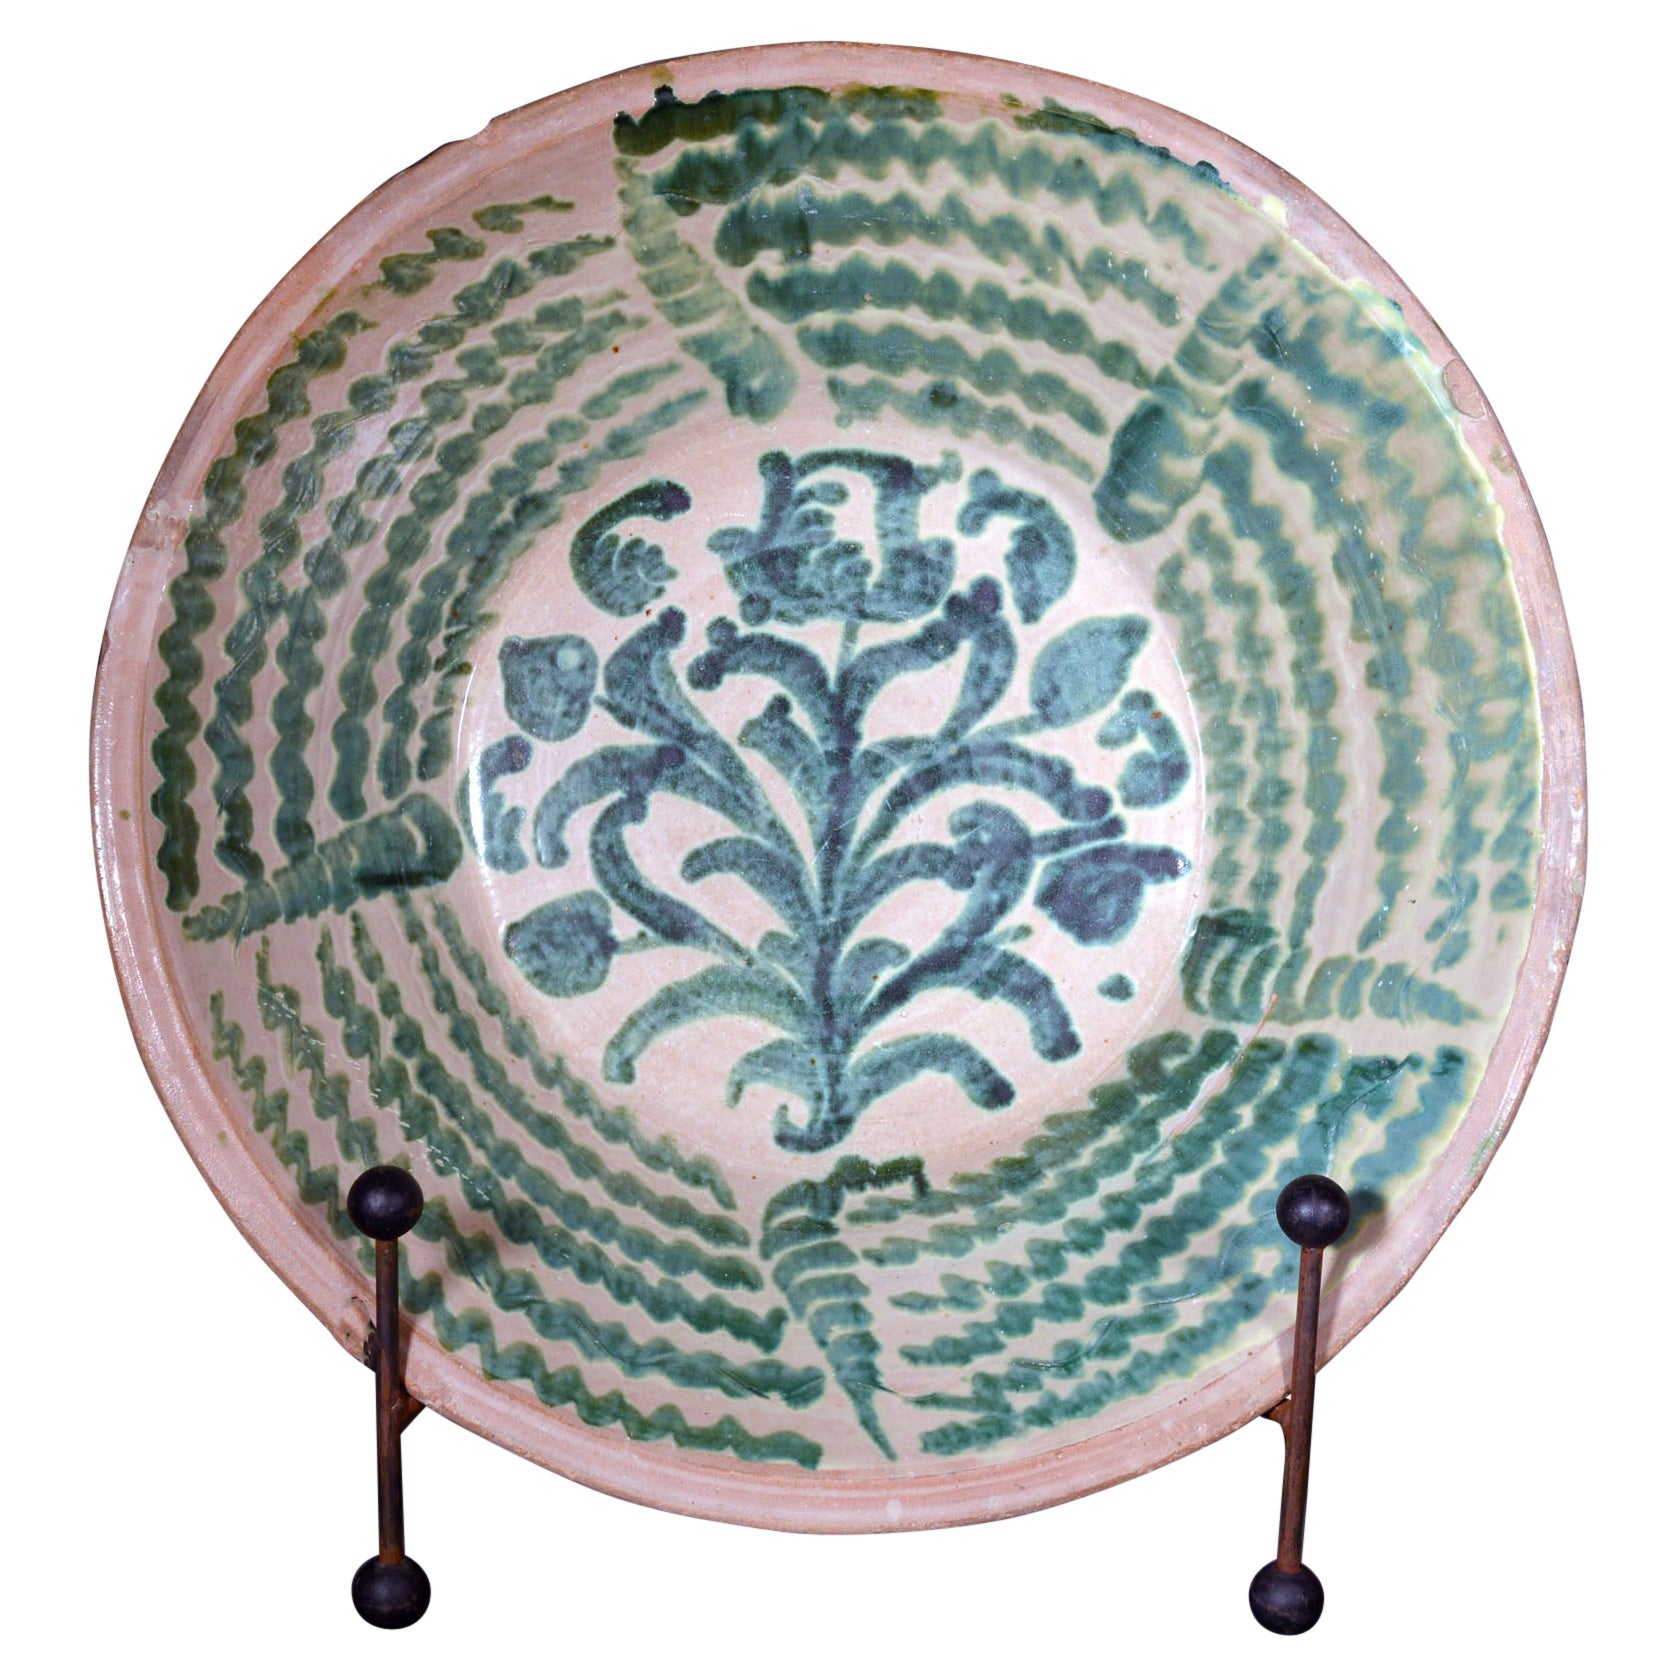 Spanish Tin-Glazed Earthenware Pottery Oversized Basin or Lebrillo